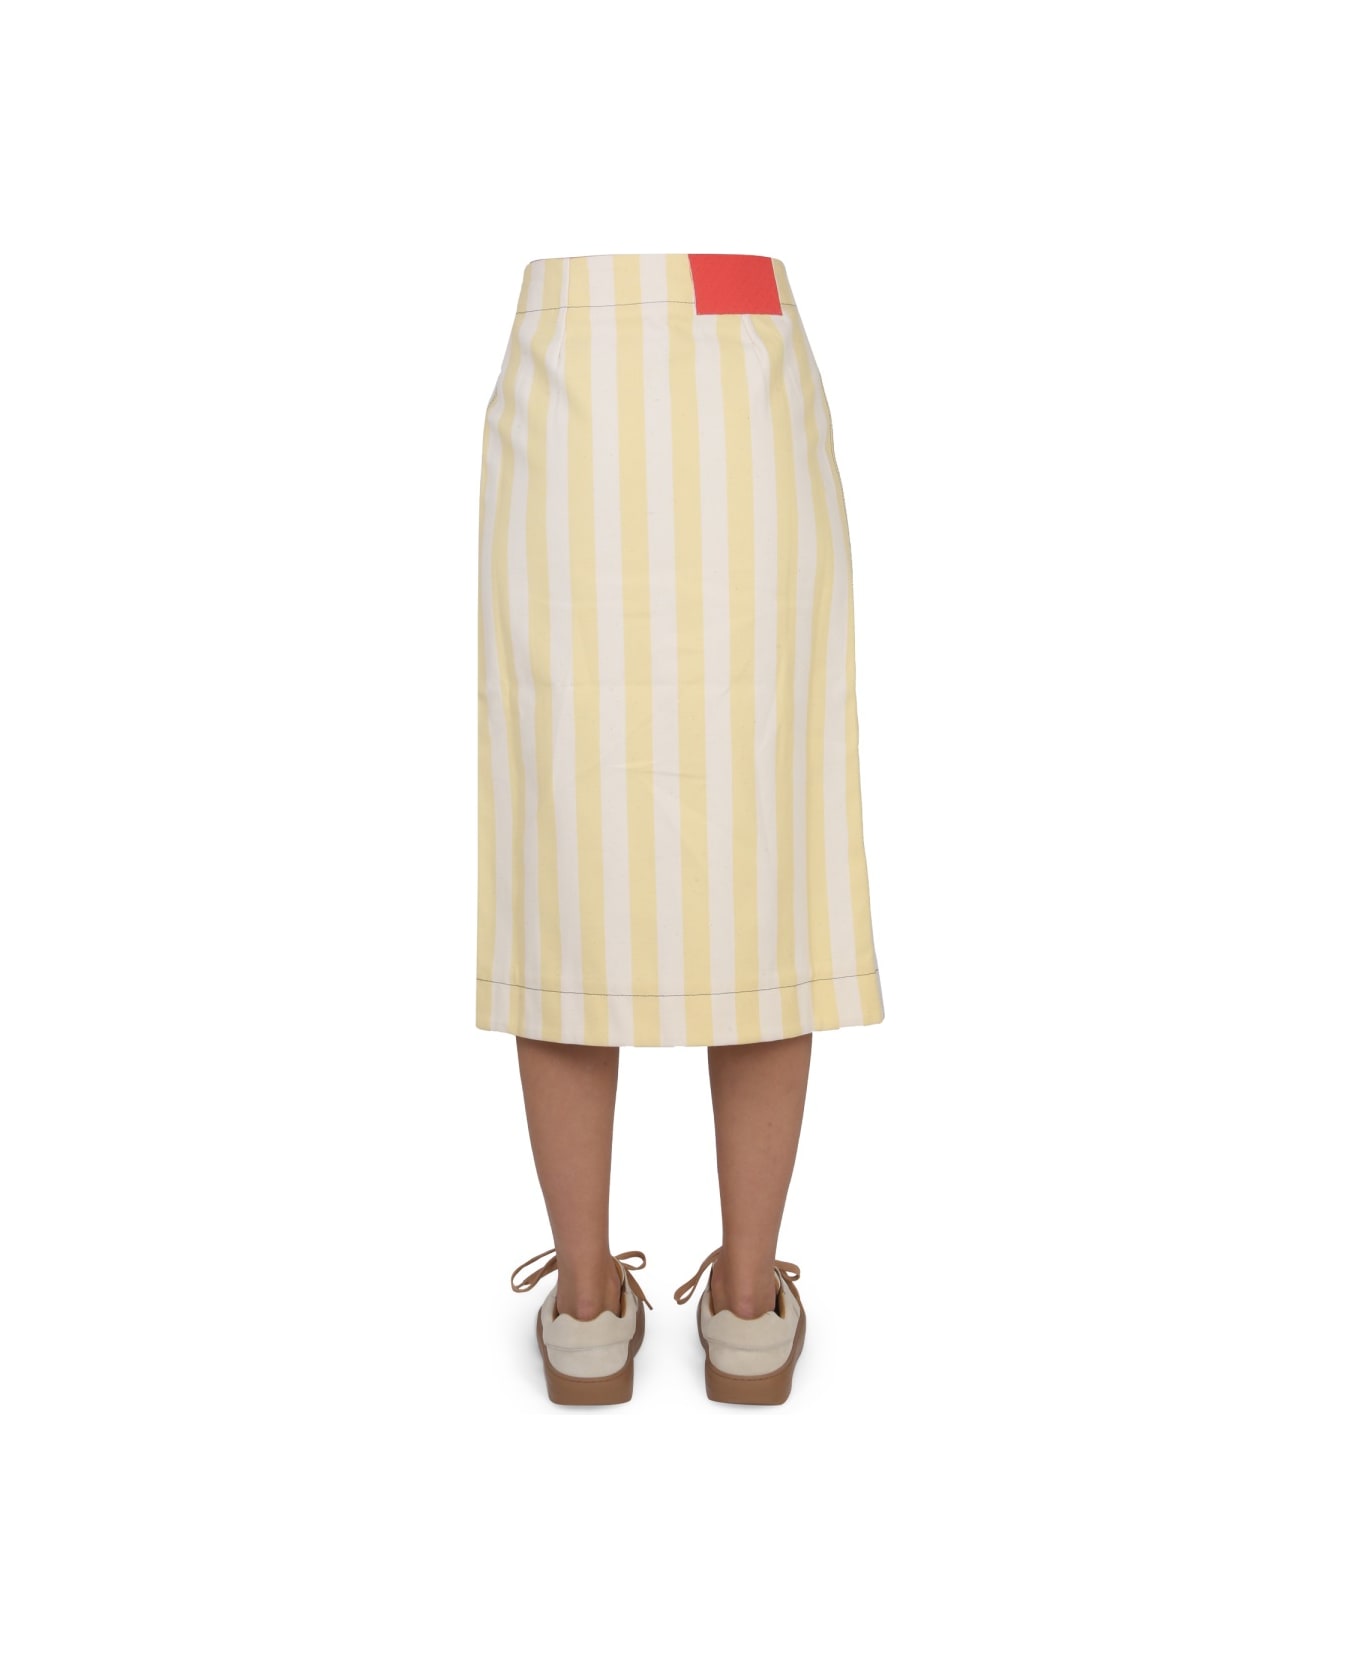 Sunnei Striped Pattern Skirt - BEIGE スカート